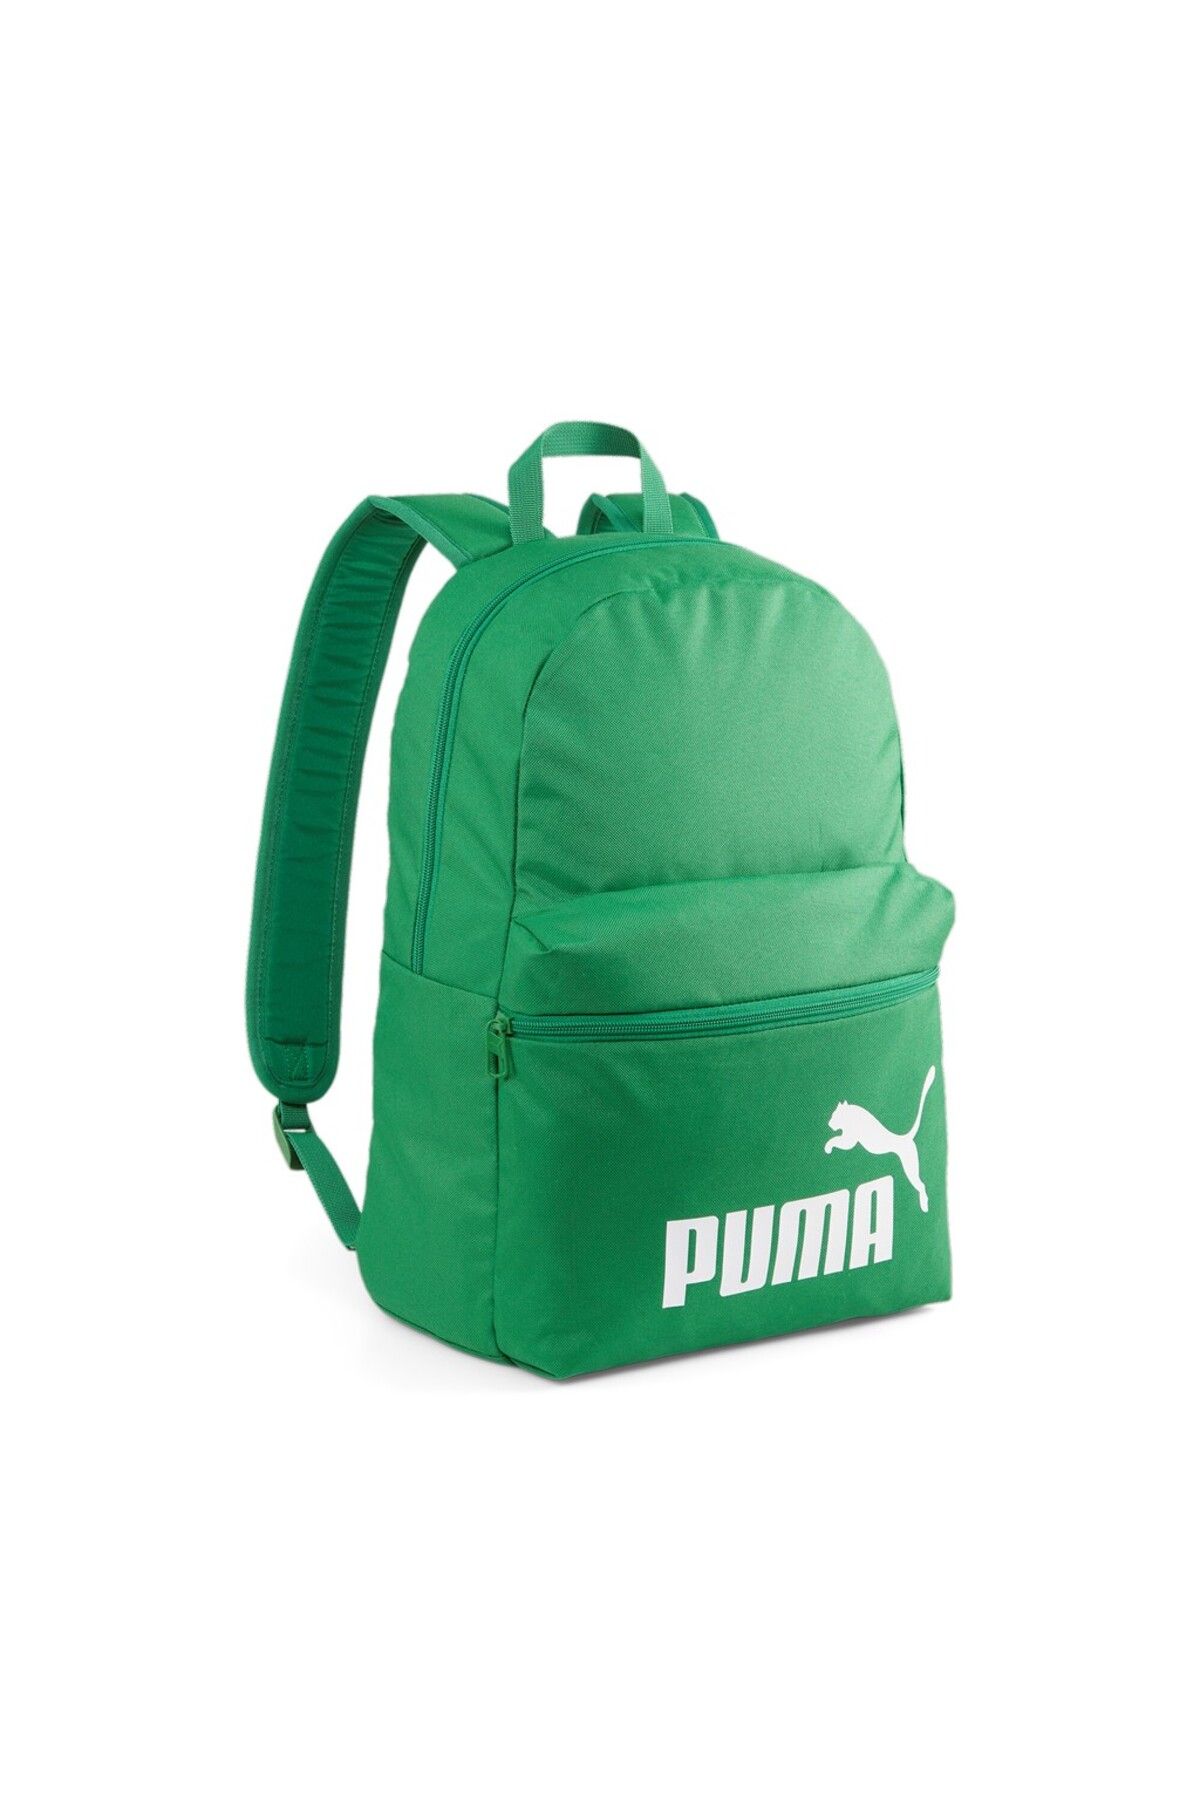 Puma Phase Backpack07994312